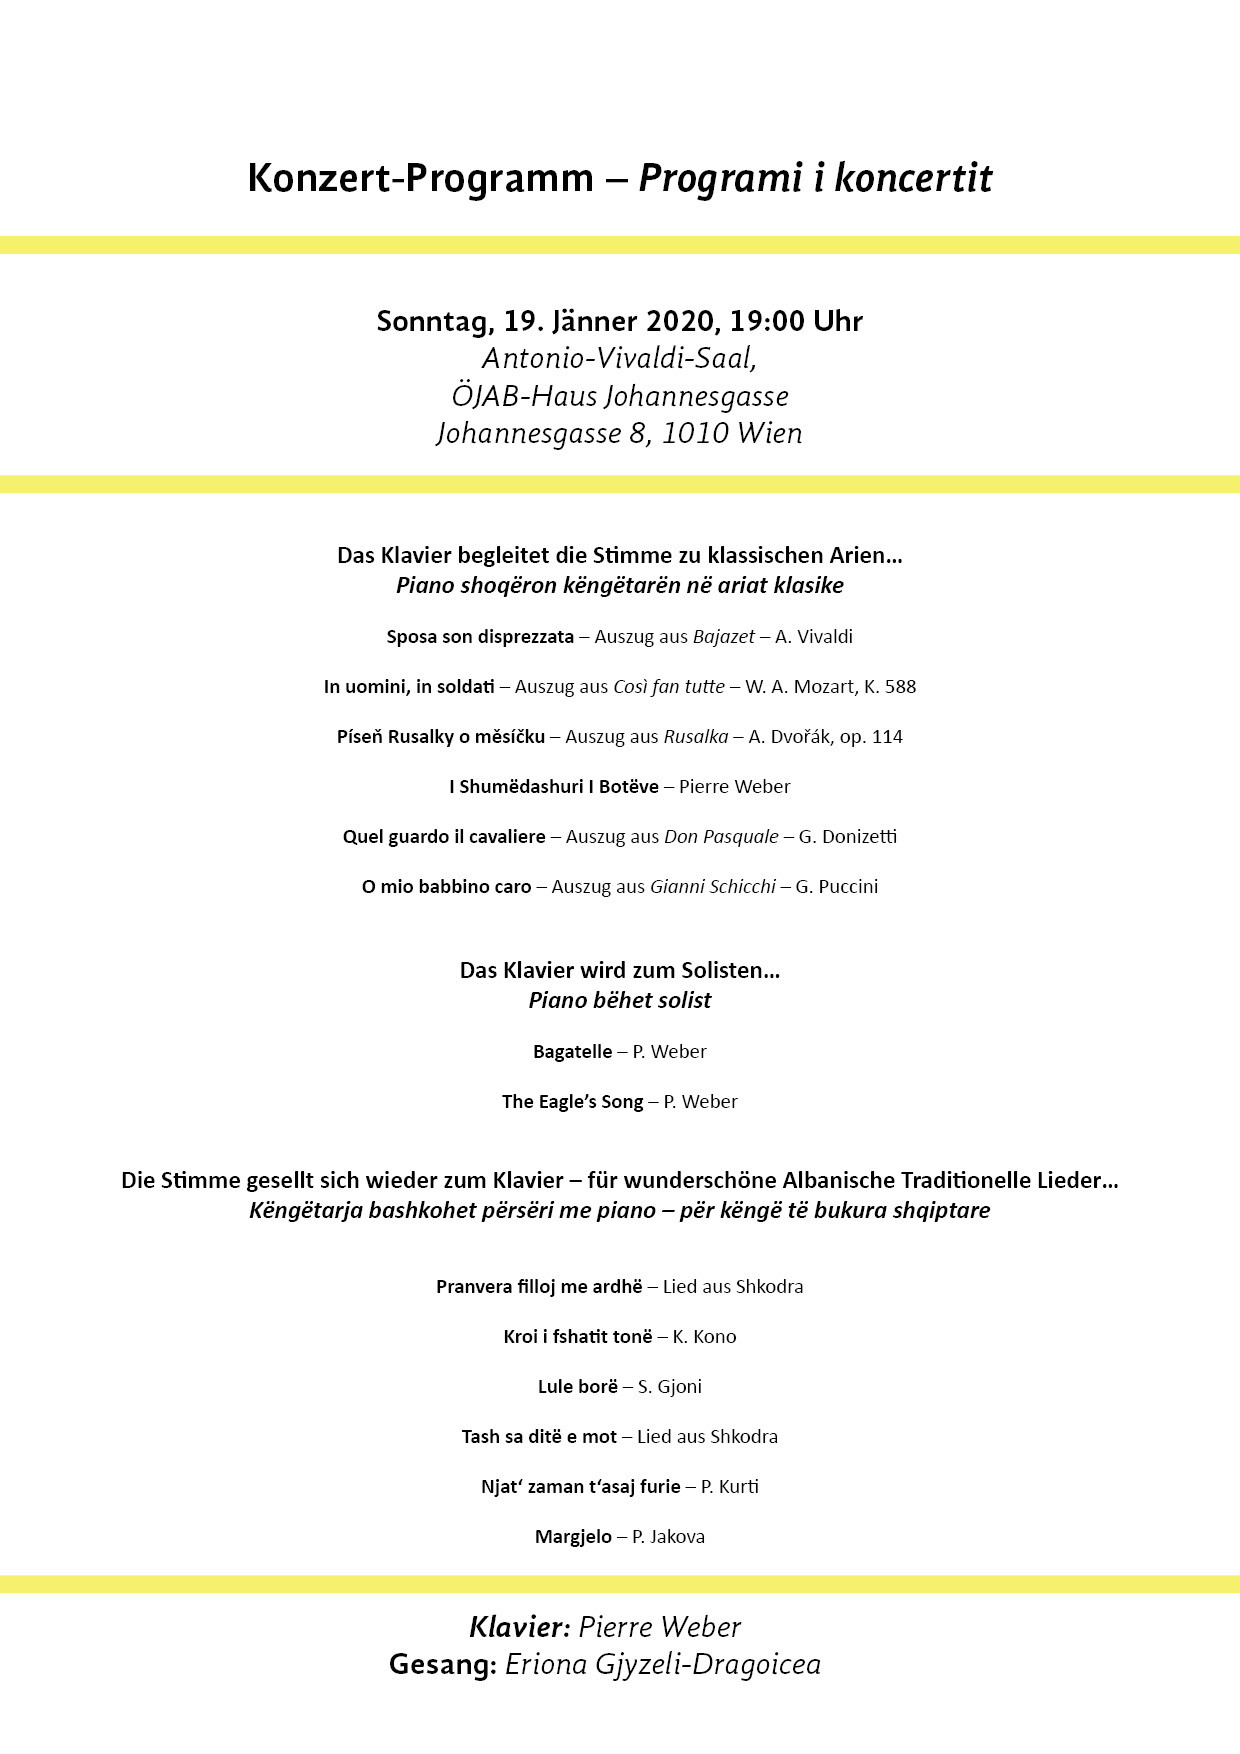 Programm des ÖJAB-Benefizkonzerts am 19.1.2020 im ÖJAB-Haus Johannesgasse.